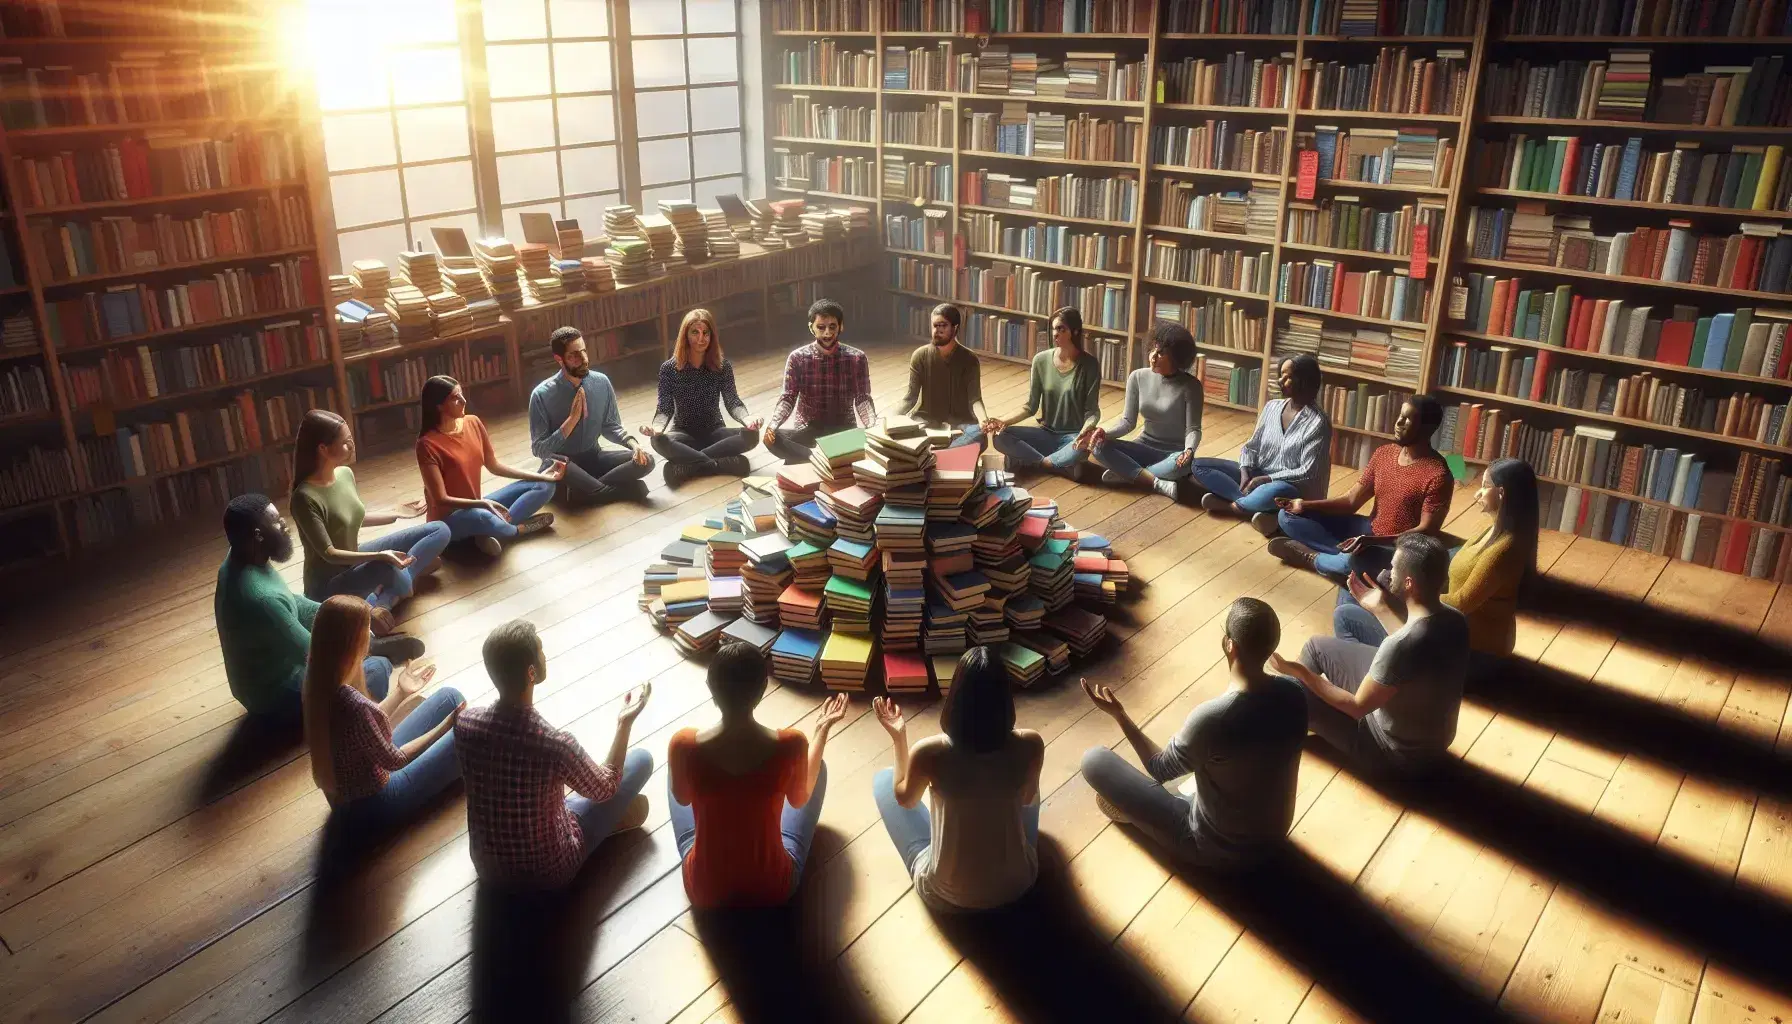 Grupo diverso de personas sentadas en círculo en una biblioteca, con libros en el centro, iluminados por luz natural, en un ambiente de diálogo y reflexión.